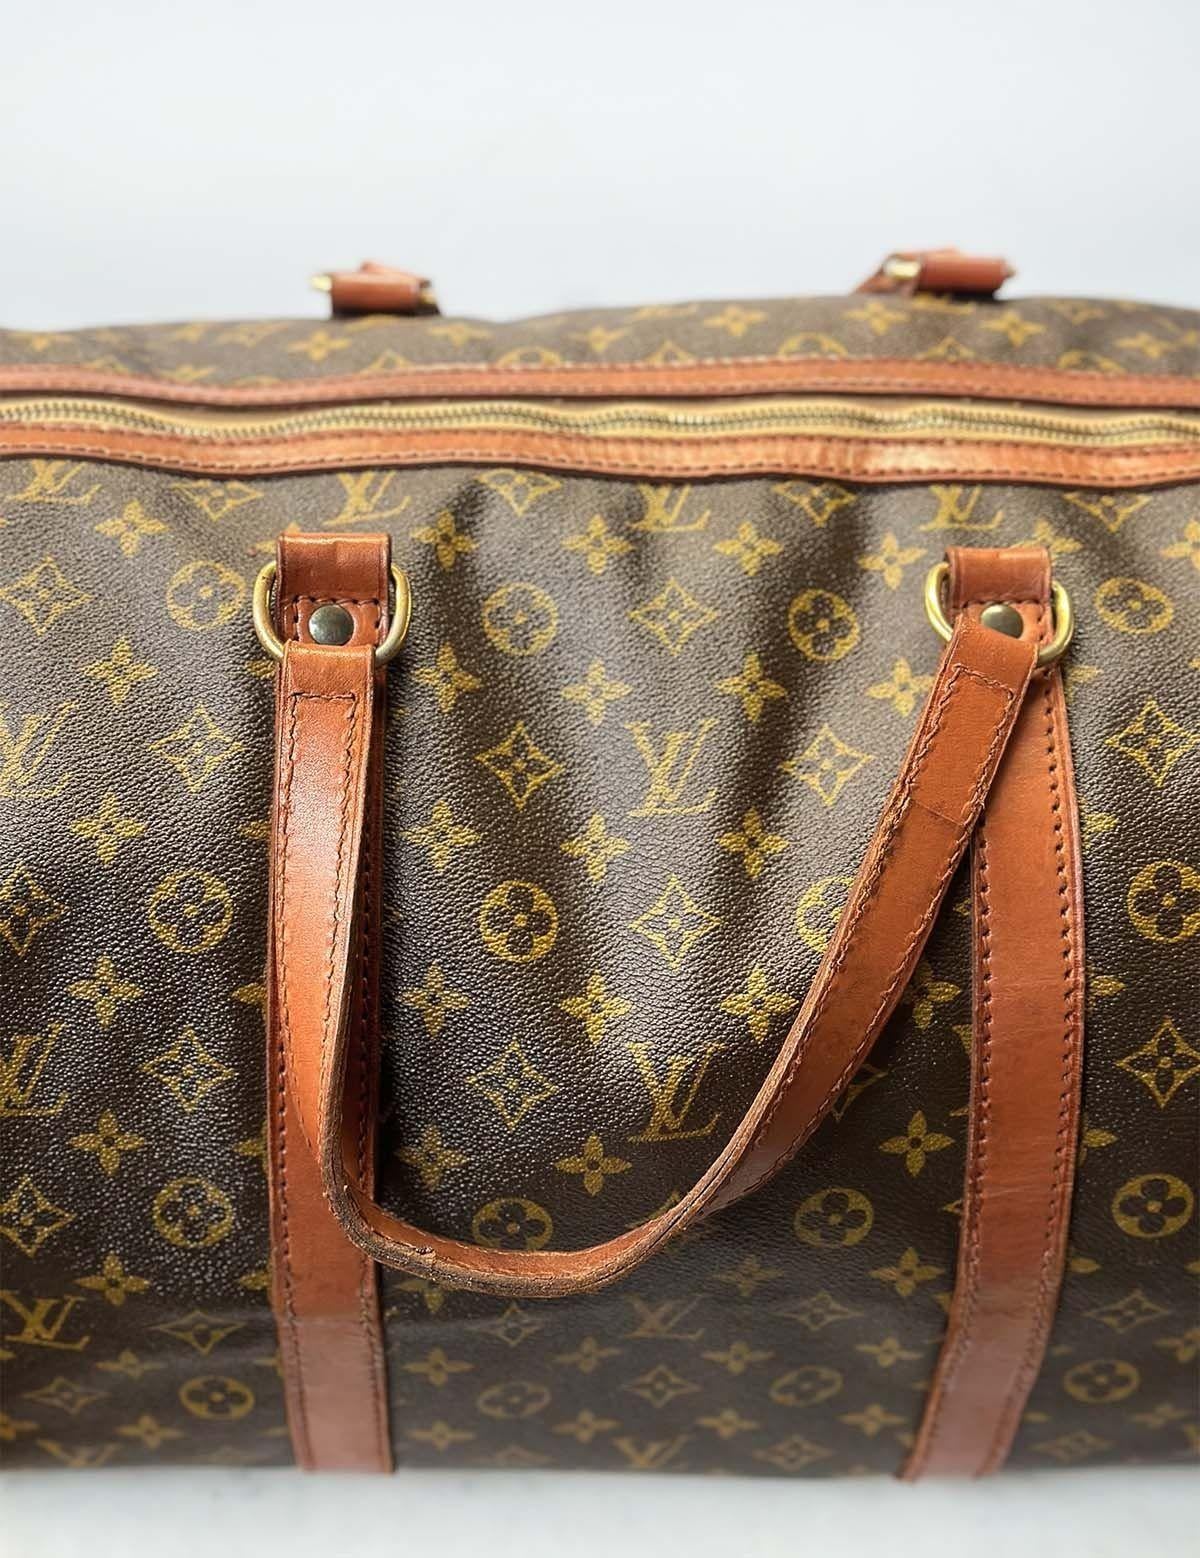 Sac à bagages vintage Louis Vuitton avec monogramme. L'extérieur du sac est orné du célèbre monogramme LV et de détails en cuir vachette, le tout complété par des ferrures en laiton doré.
Dimensions :
19 